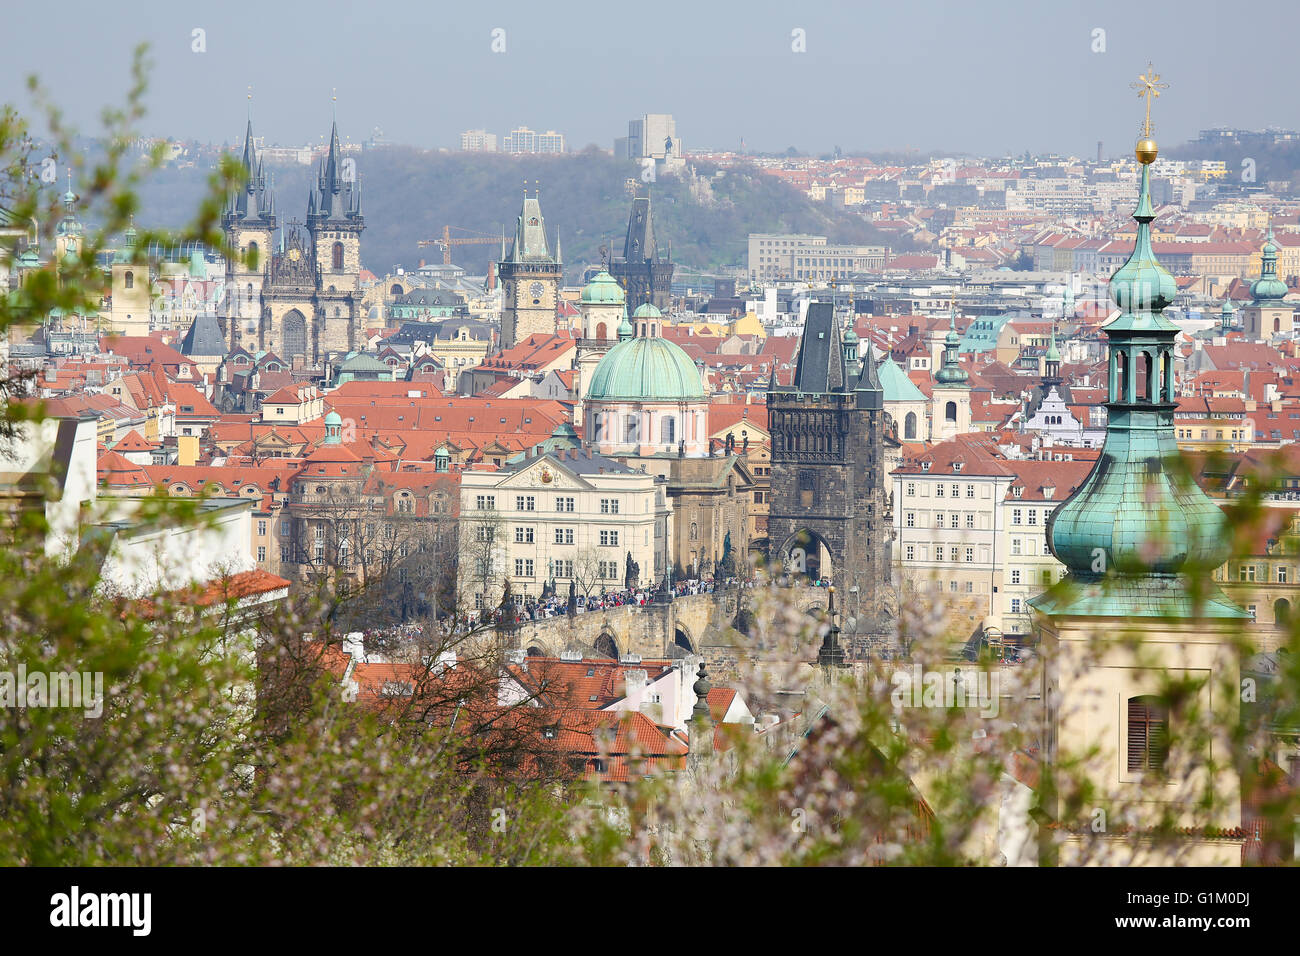 Vista sul centro storico di Praga Repubblica Ceca, con la Chiesa di Nostra Signora di Tyn e la chiesa di St Nicholas Foto Stock